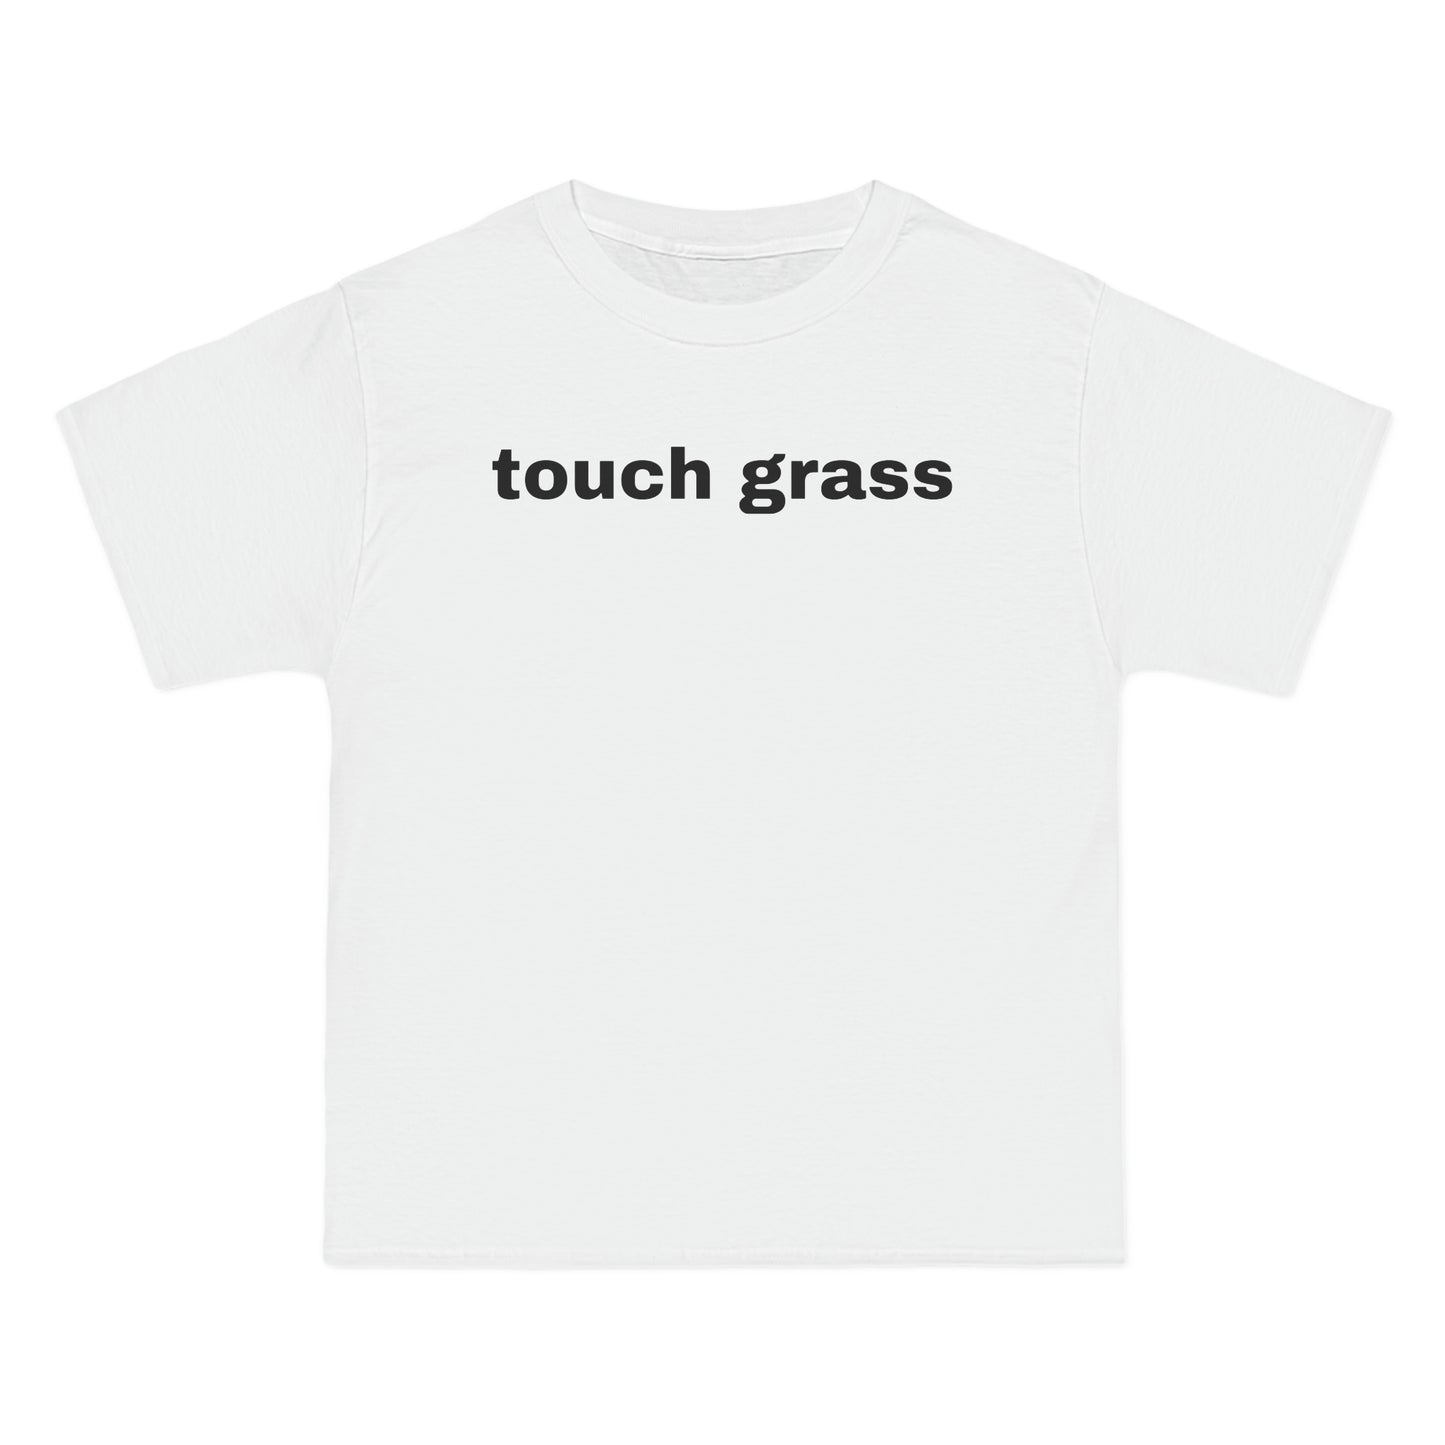 touch grass Tee